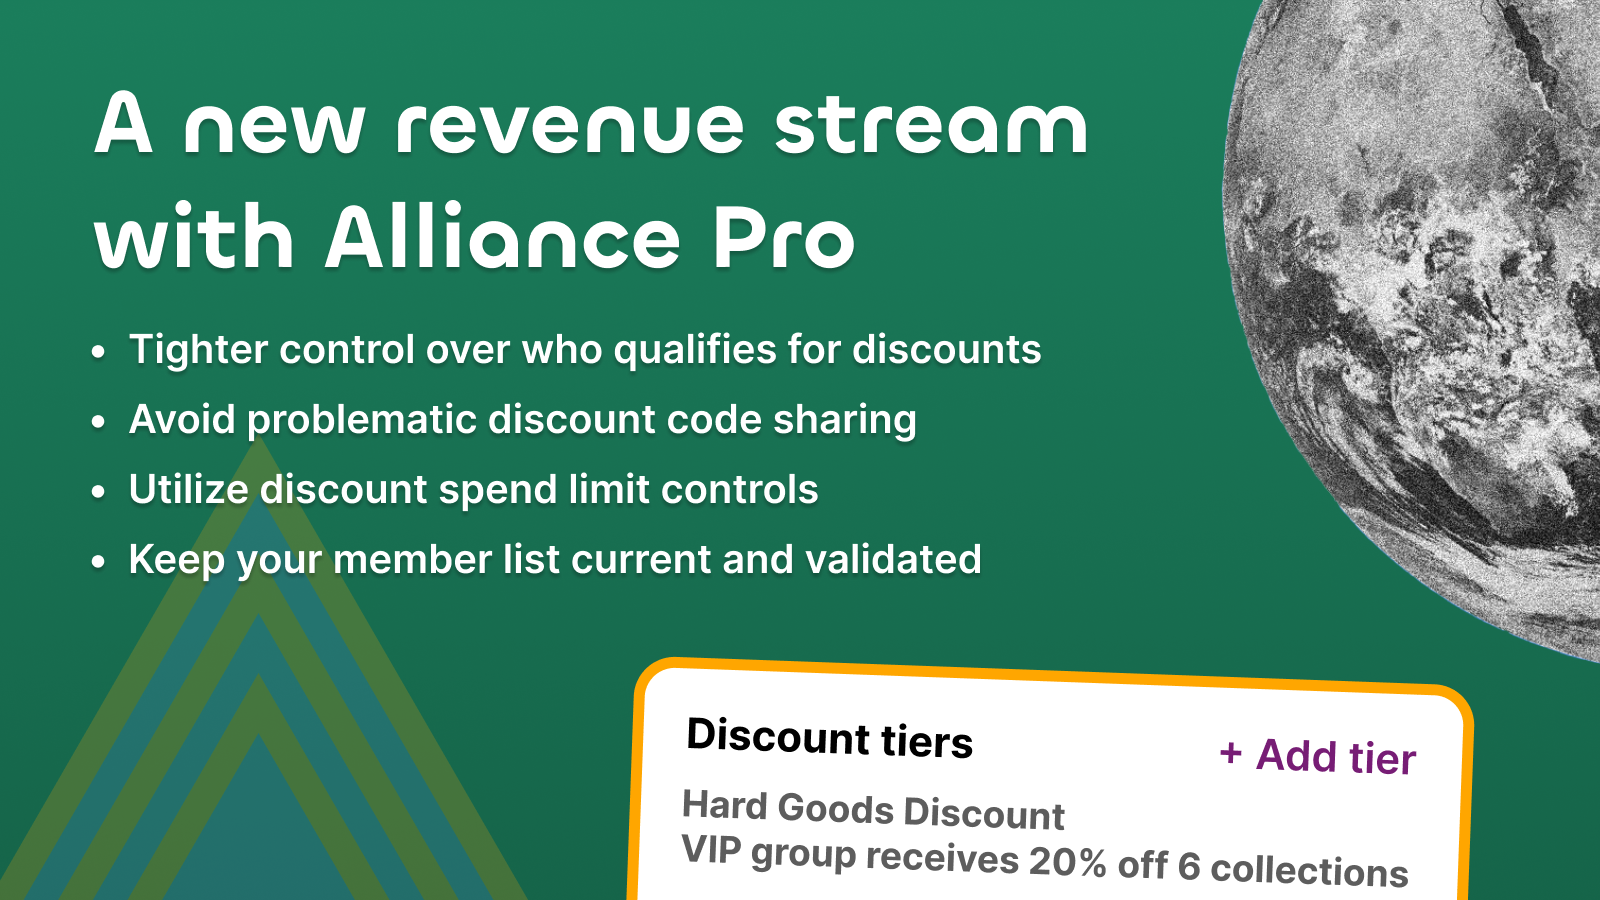 Una nueva fuente de ingresos con Alliance Pro